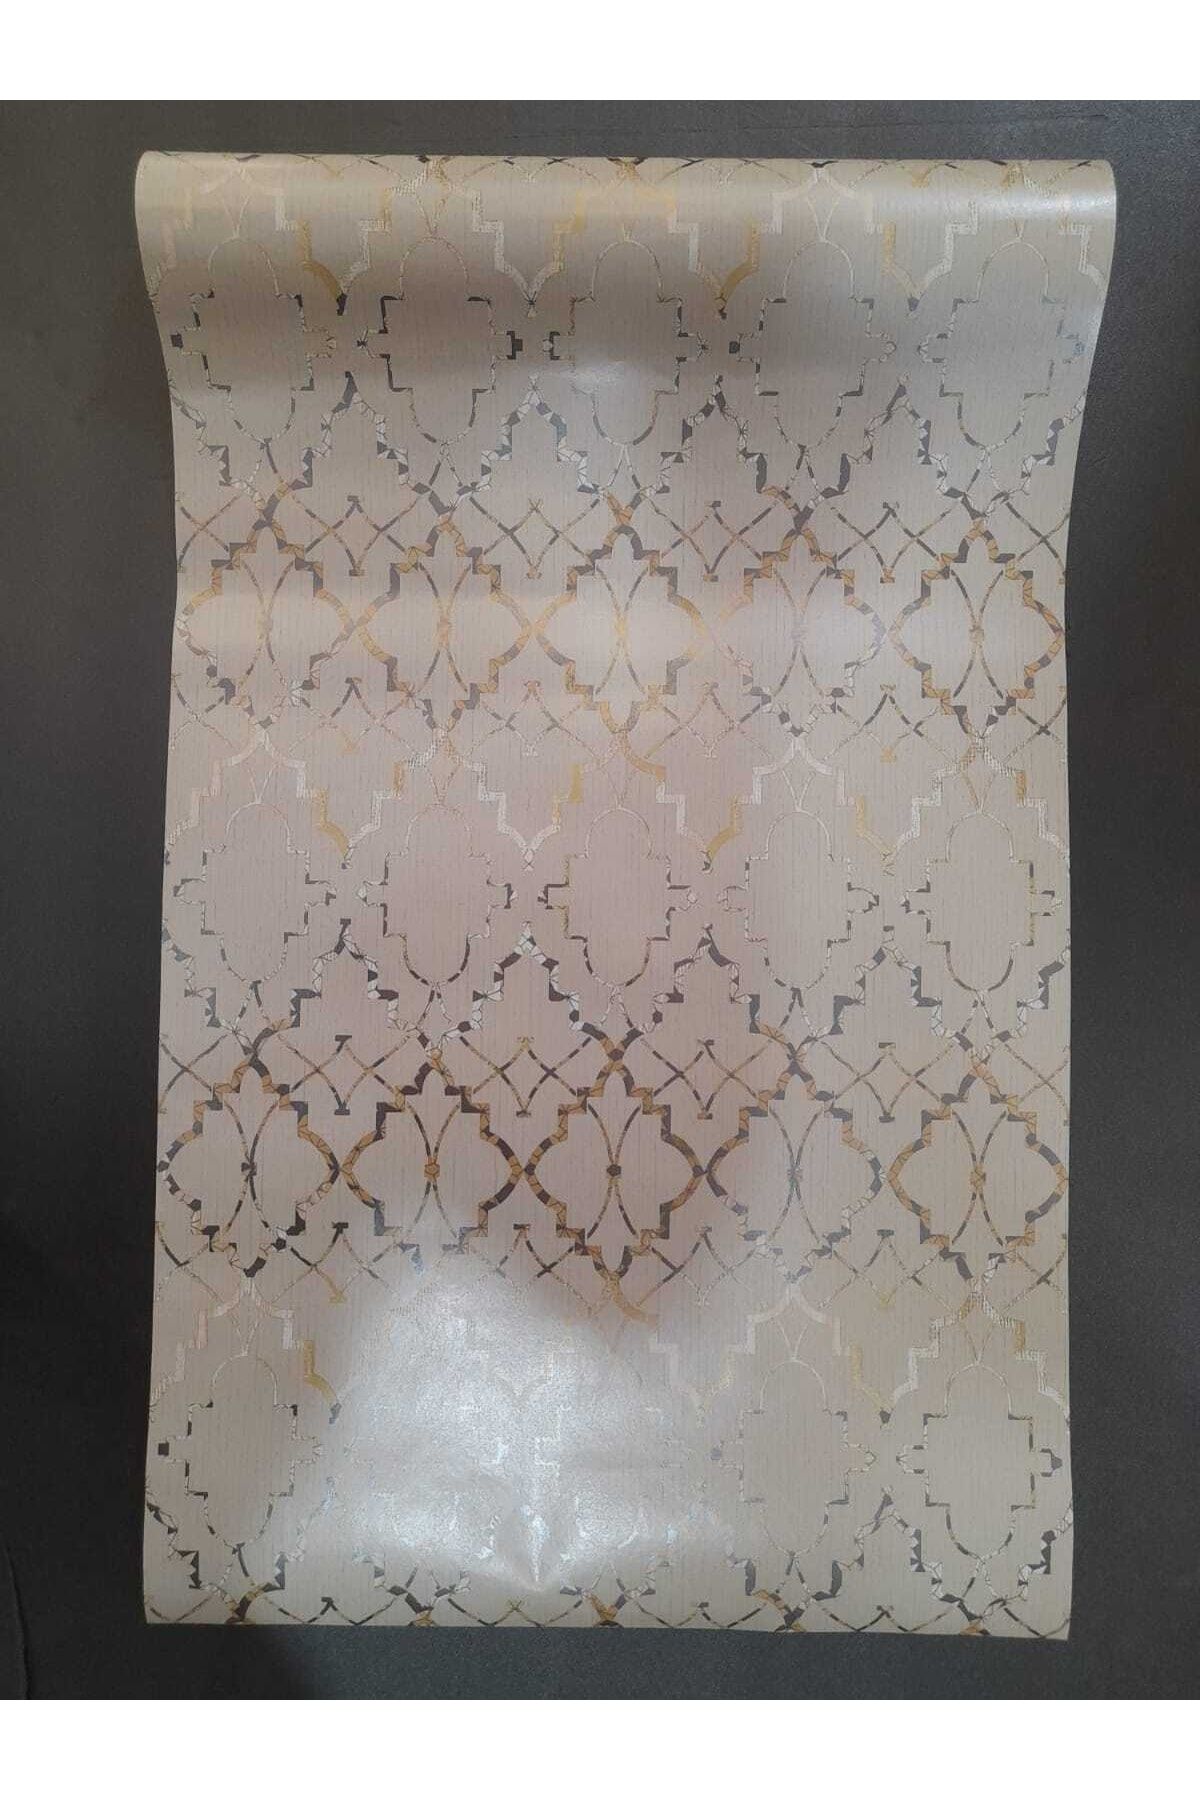 oskar Modern Desenli Gold Duvar Kağıdı(5m2)